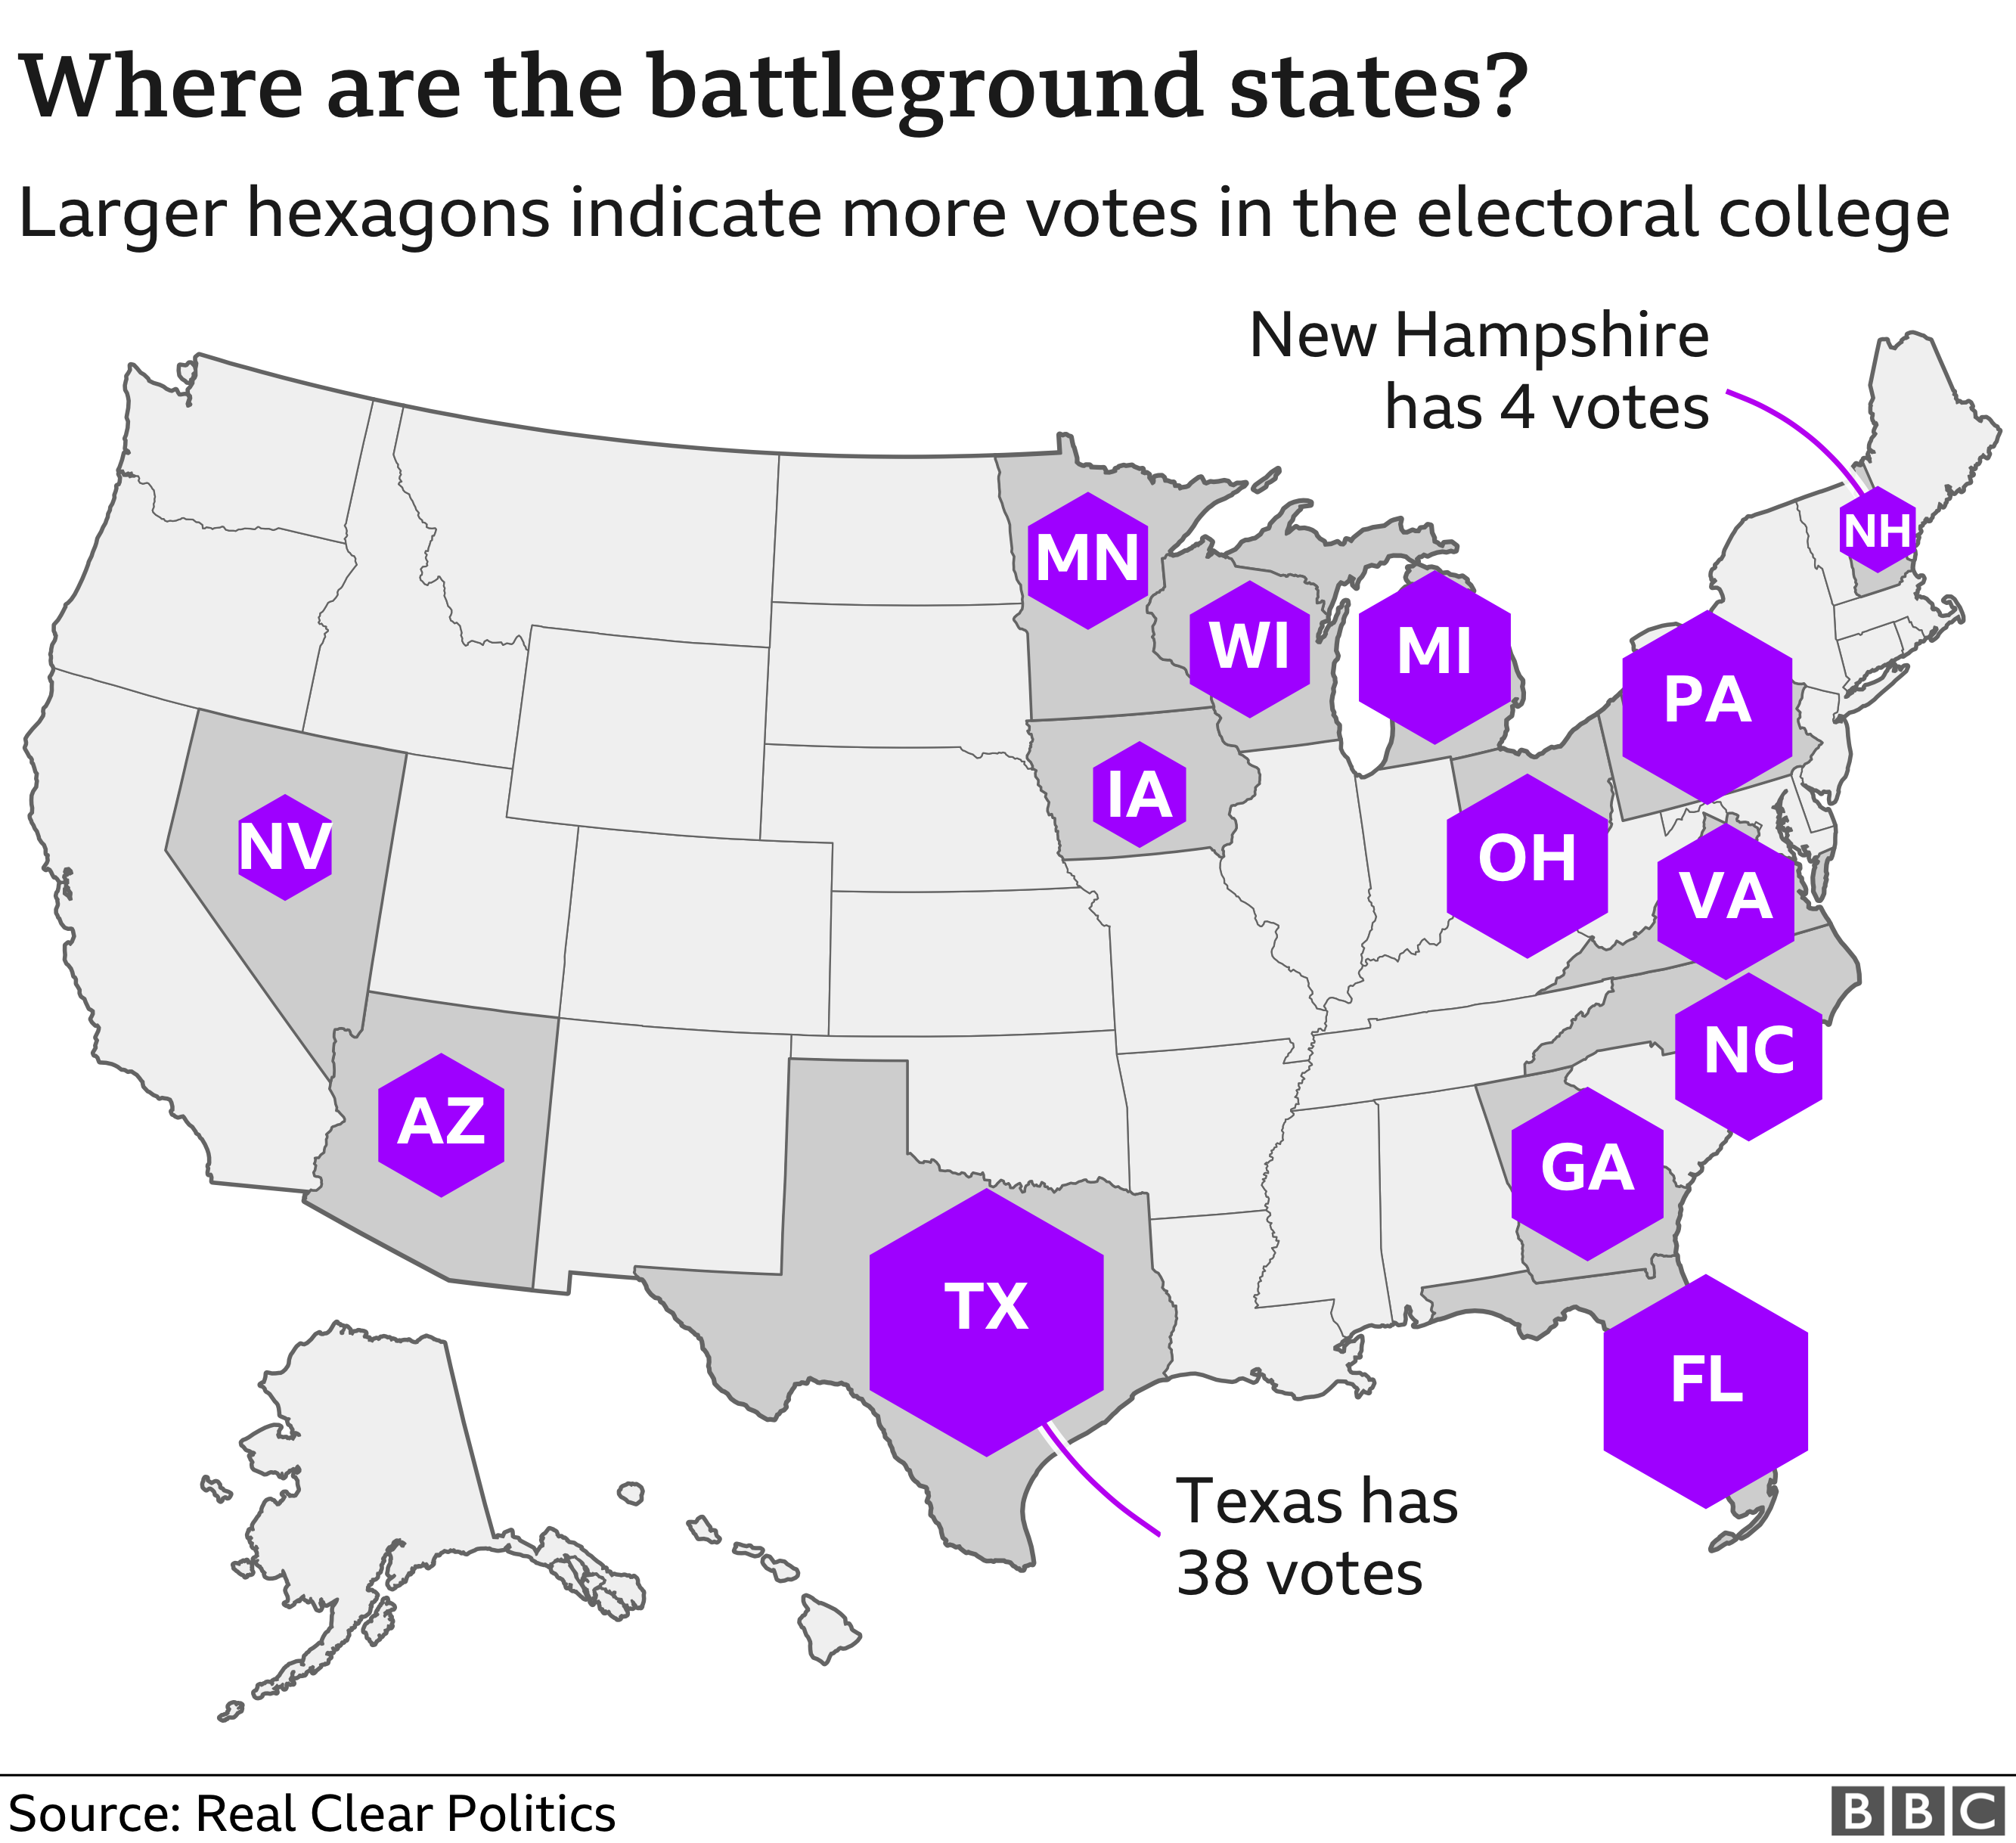 Карта, показывающая, где находятся государства на поле боя на выборах 2020 года.Техас имеет наибольшее количество голосов коллегии выборщиков (38), а Нью-Гэмпшир - наименьшее (4)